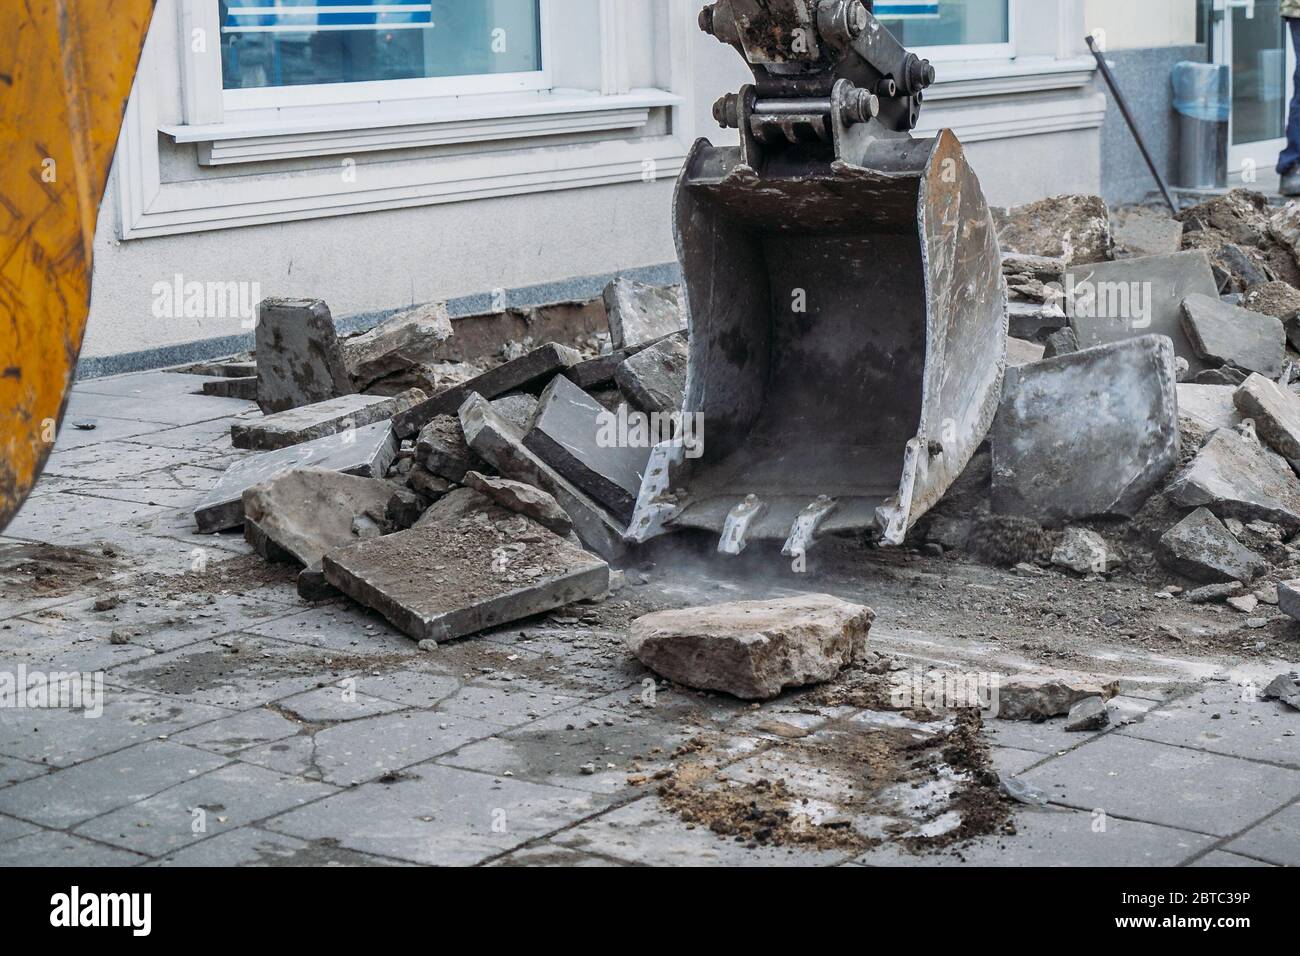 Excavator bucket breaks paving slabs. Sidewalk dismantling and repair work in city. Stock Photo